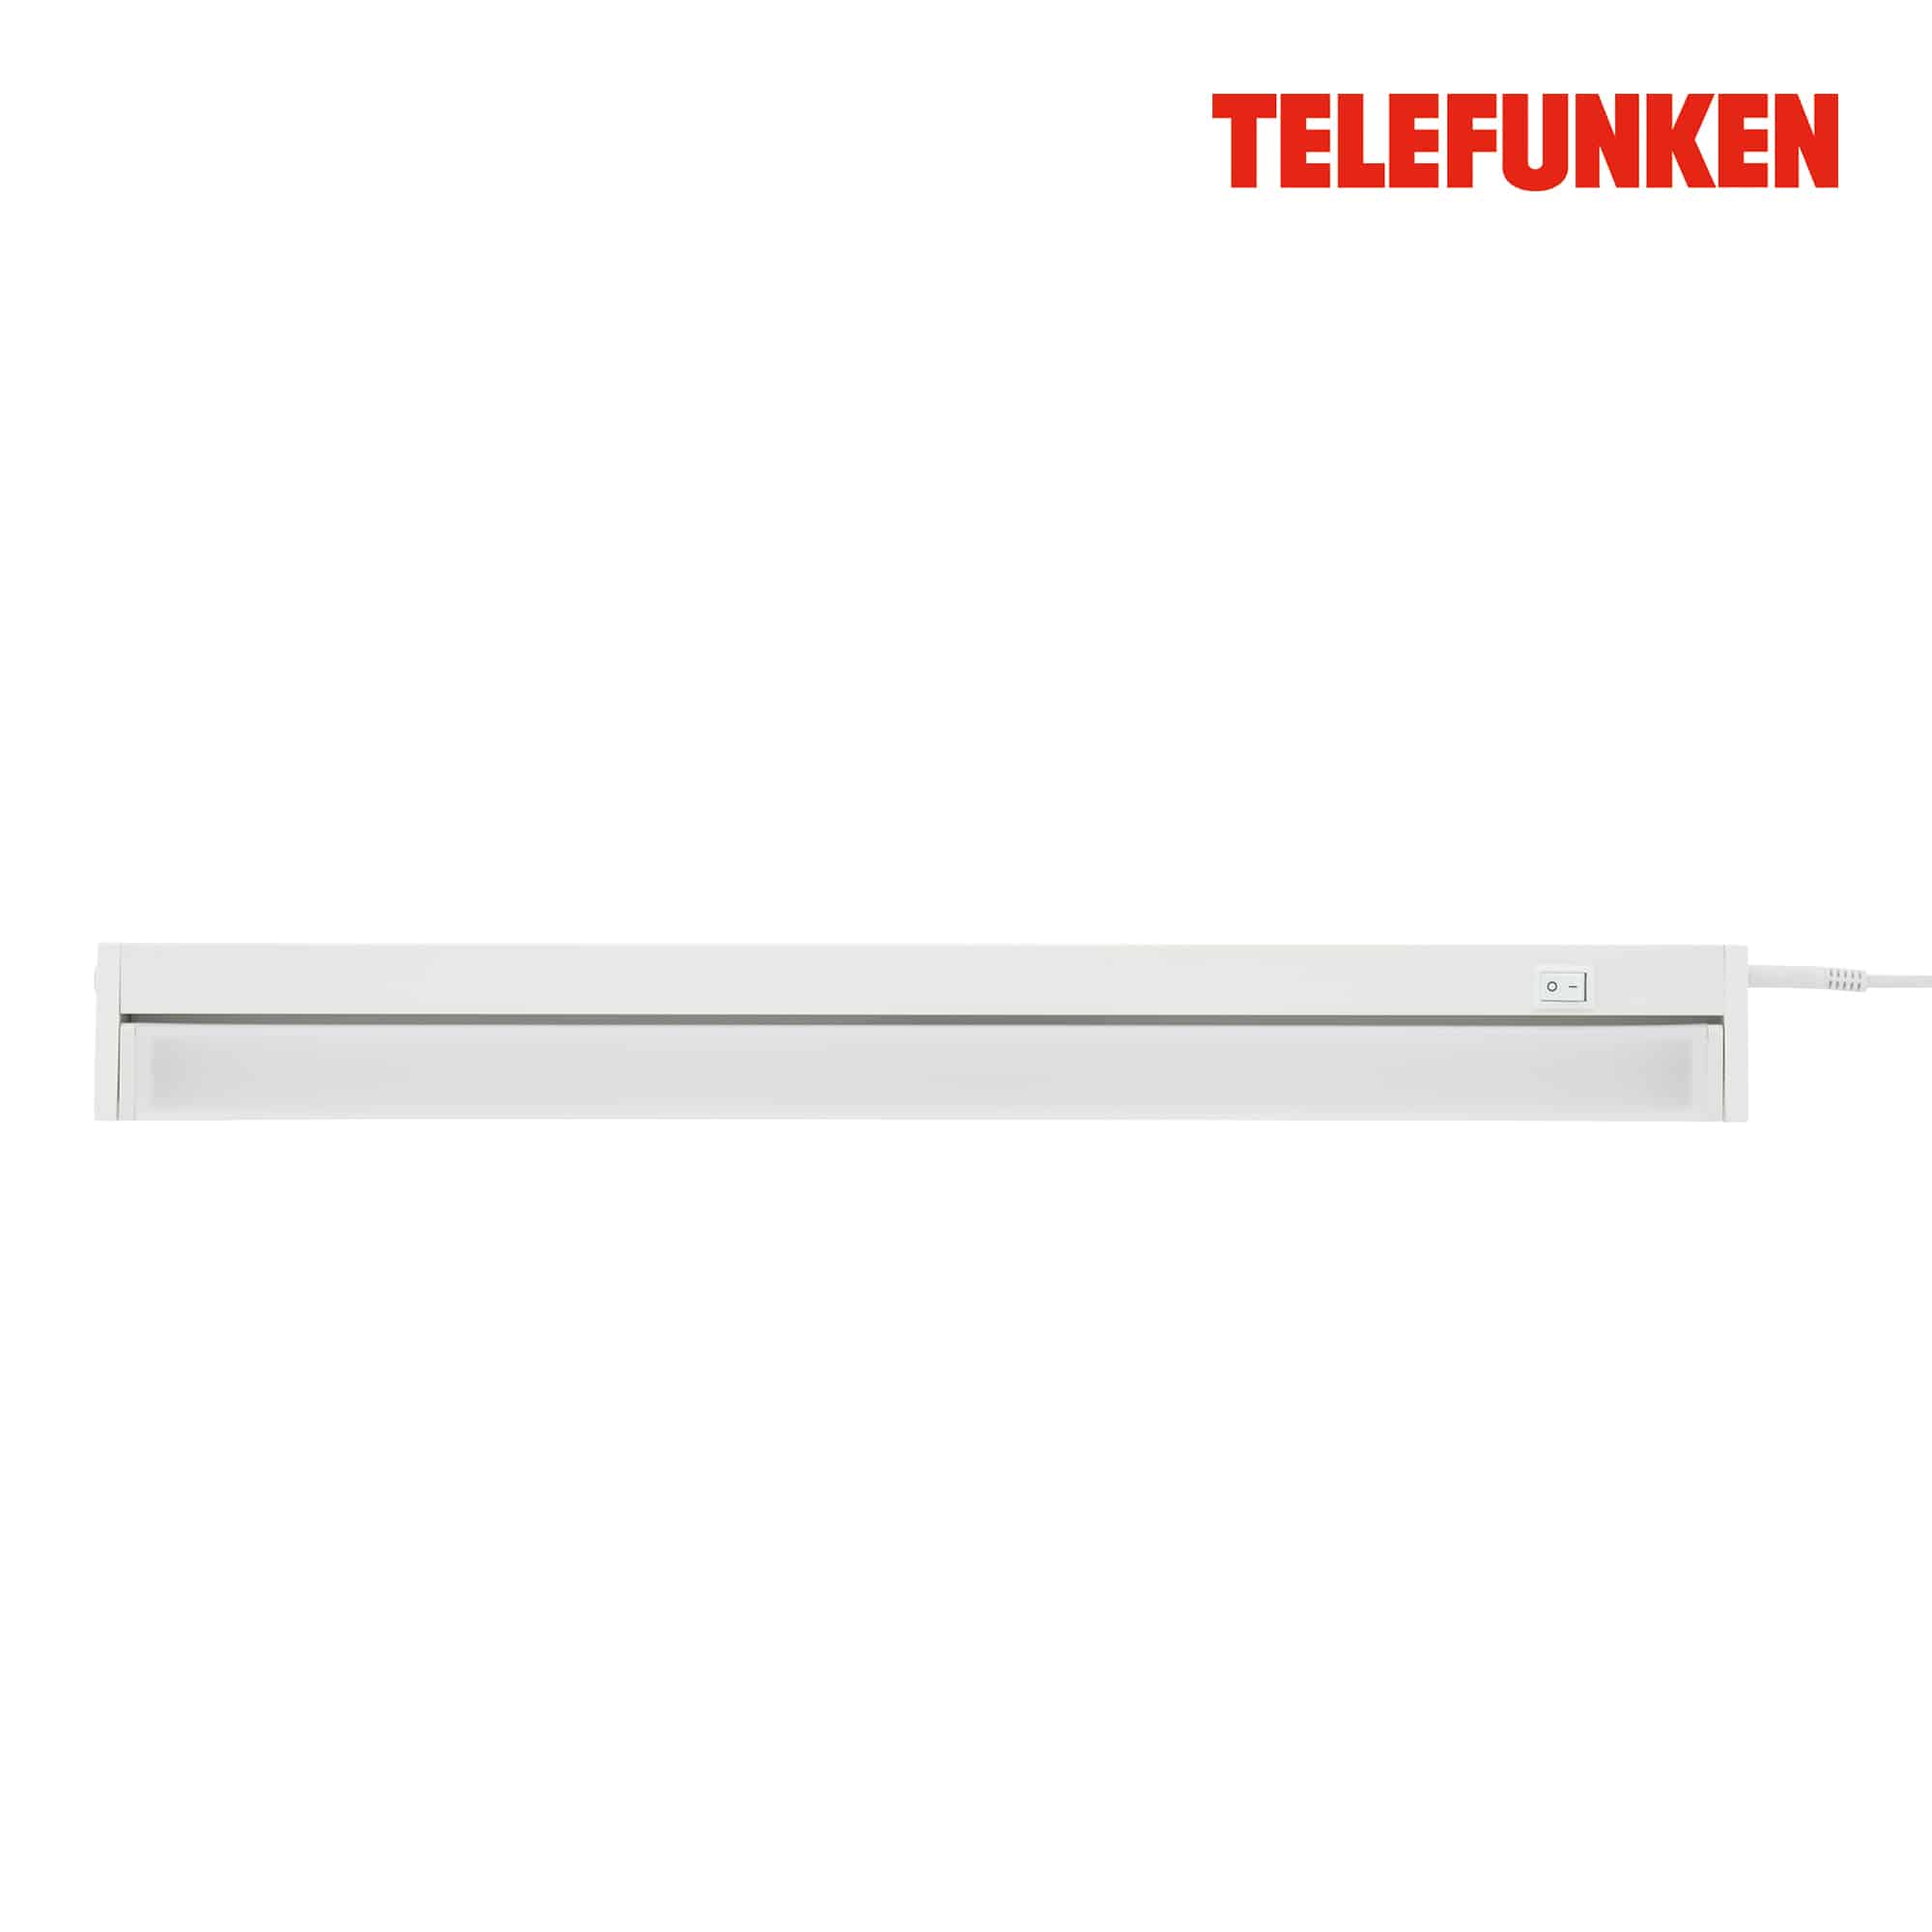 TELEFUNKEN LED Unterbauleuchte, 55 cm, 8,5 W, Weiß